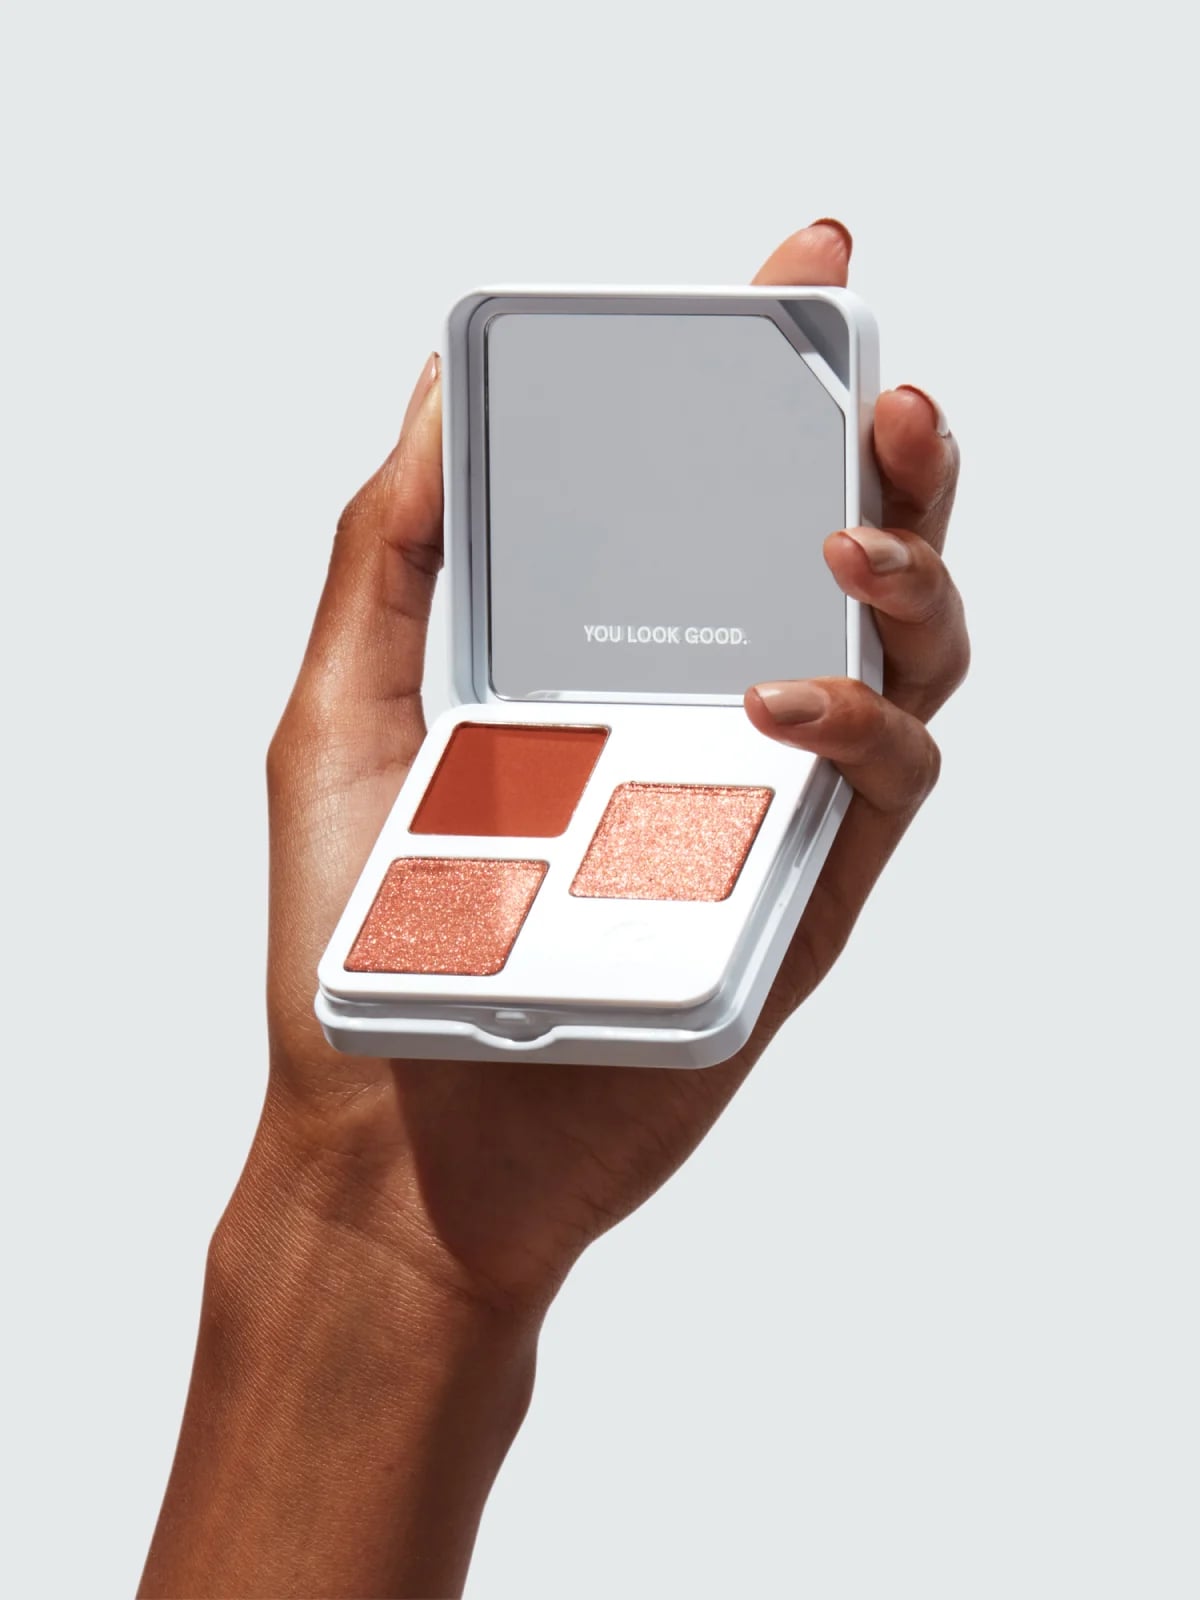 Beauty Packaging Trend 2021: Monochrome